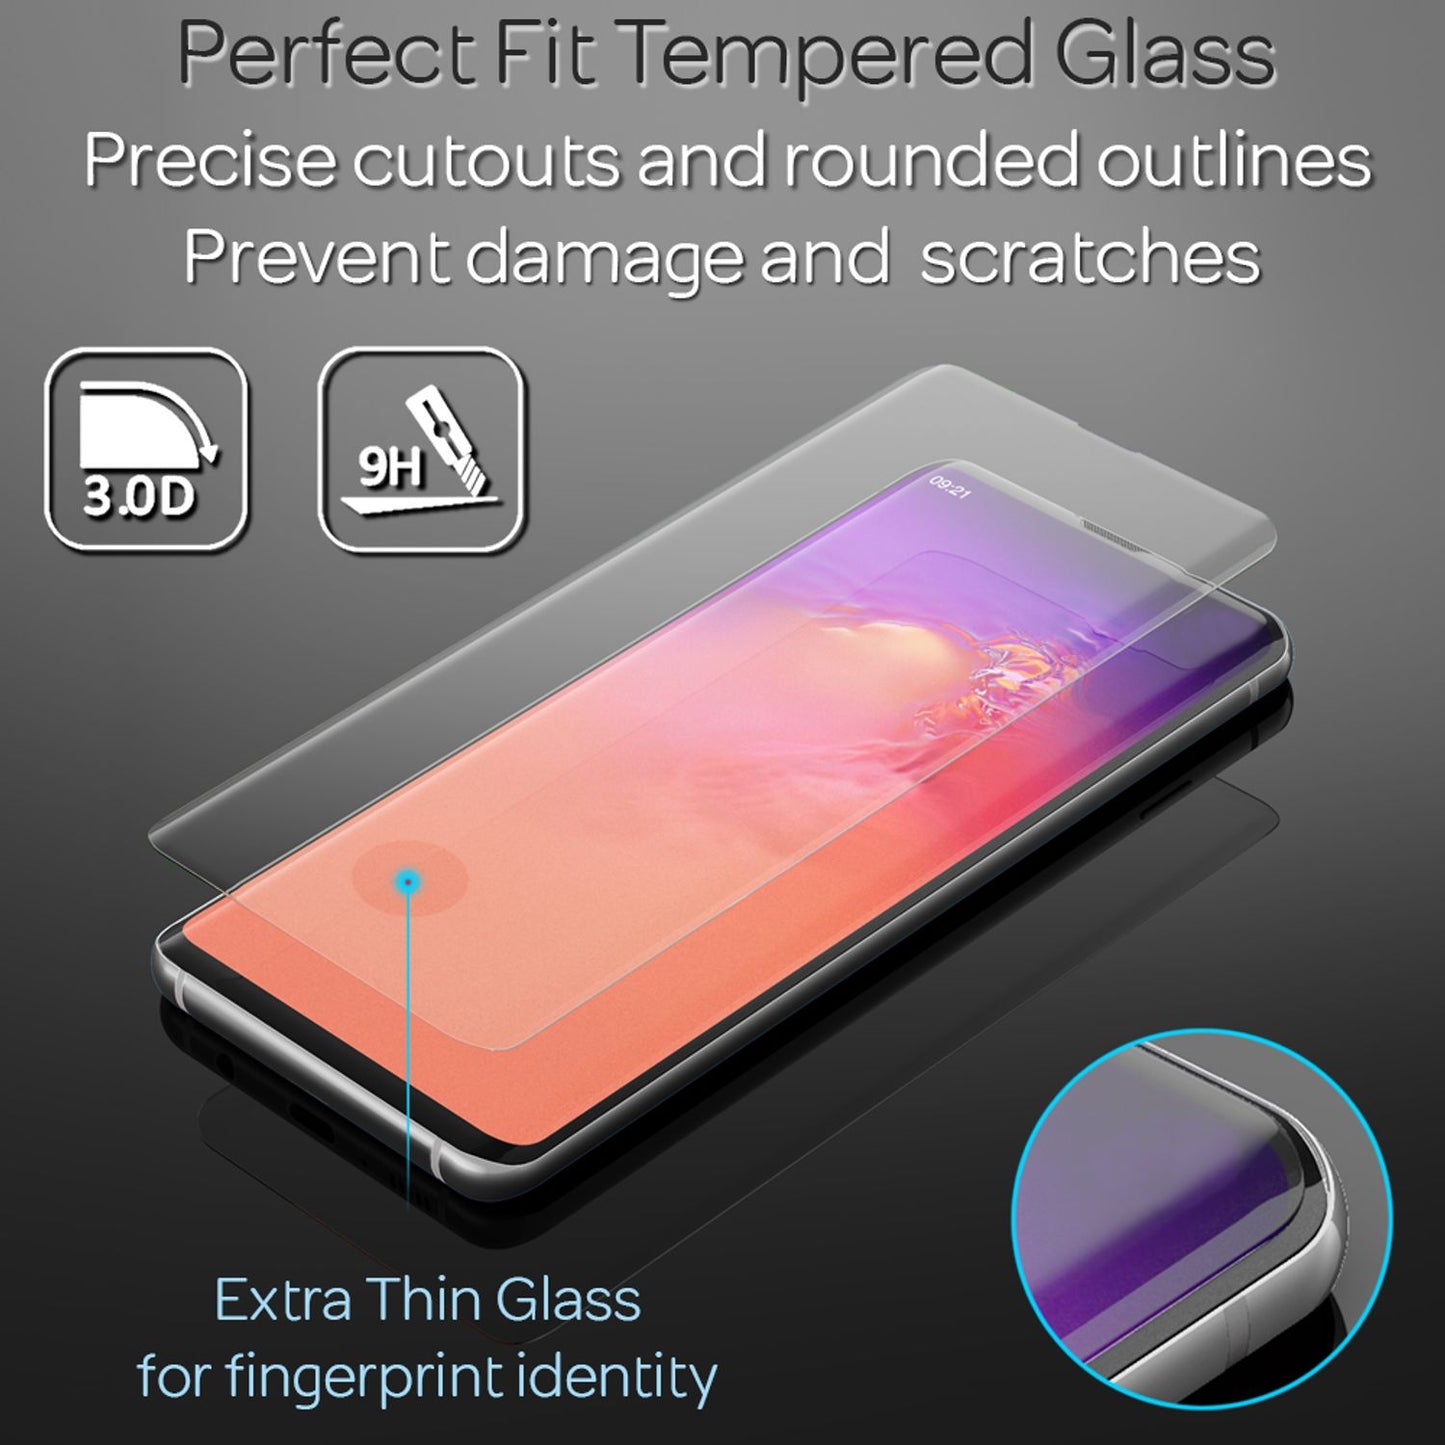 NALIA Schutz Glas für Samsung Galaxy S20, 9H Full Cover Film Handy Display Folie